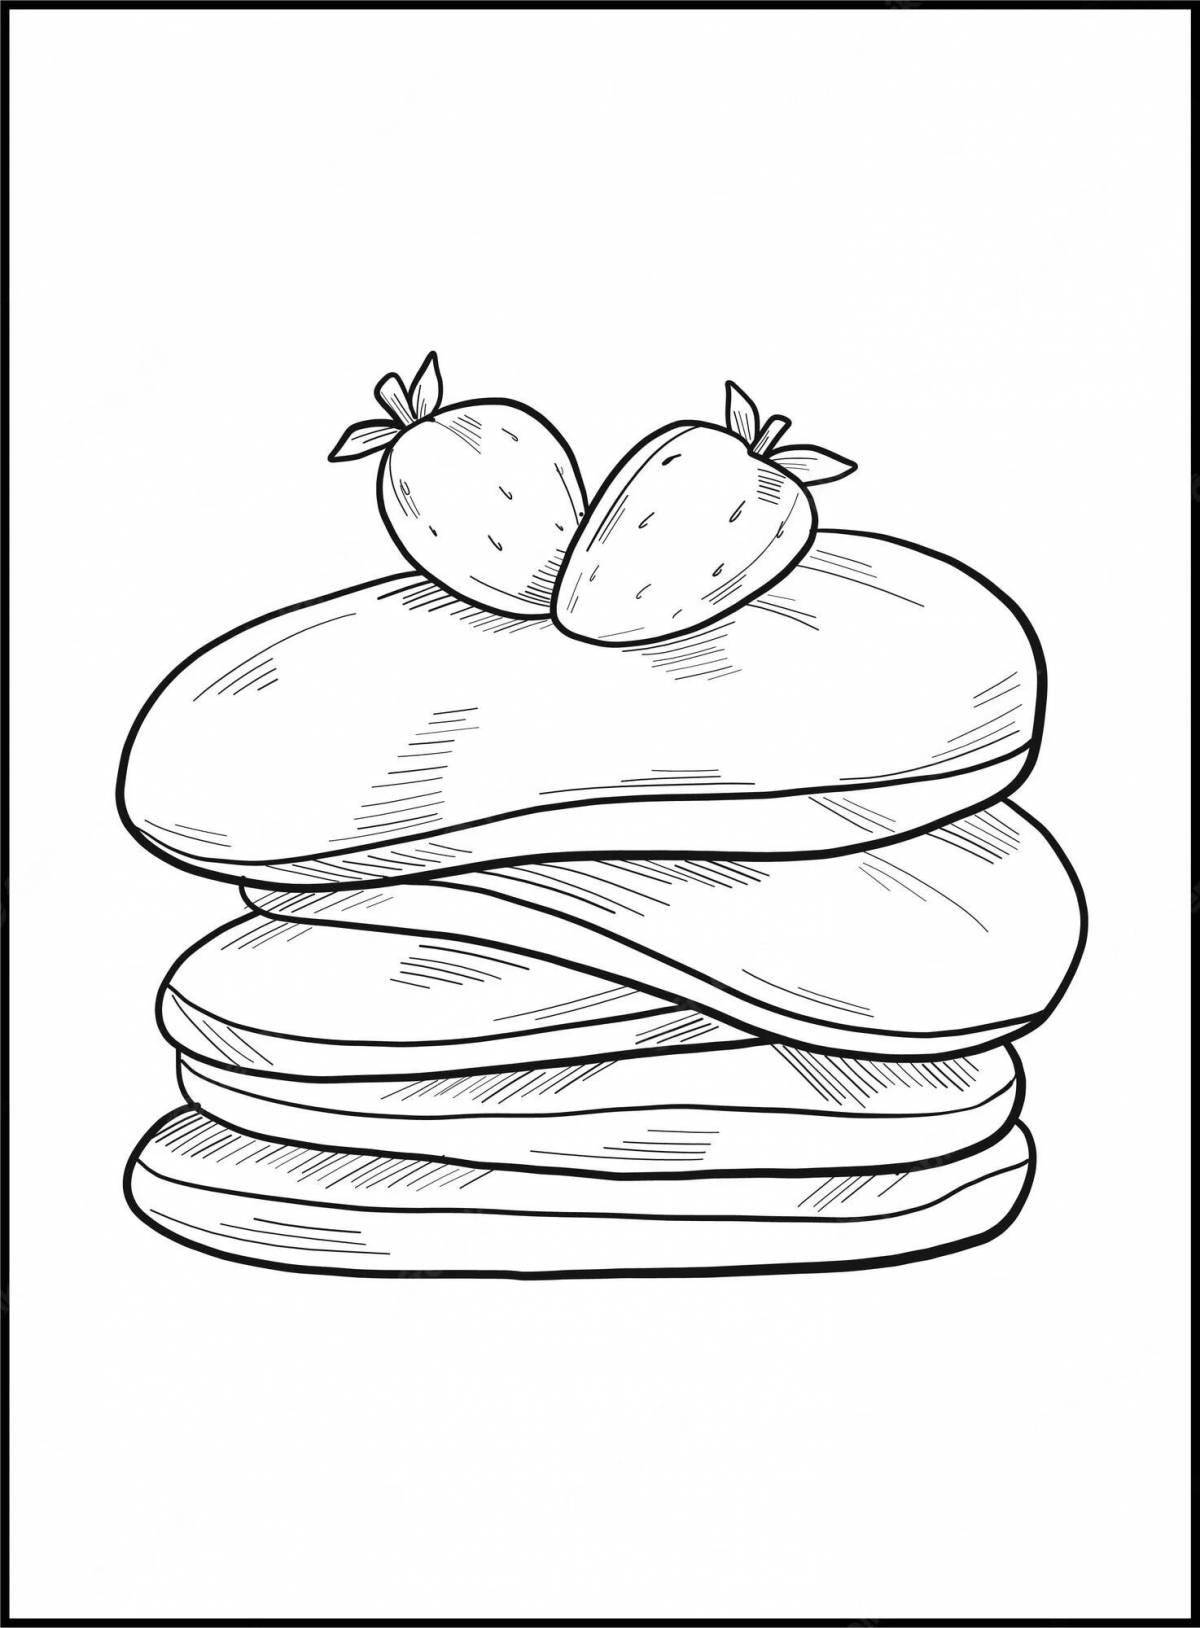 Fun coloring pancakes for kids